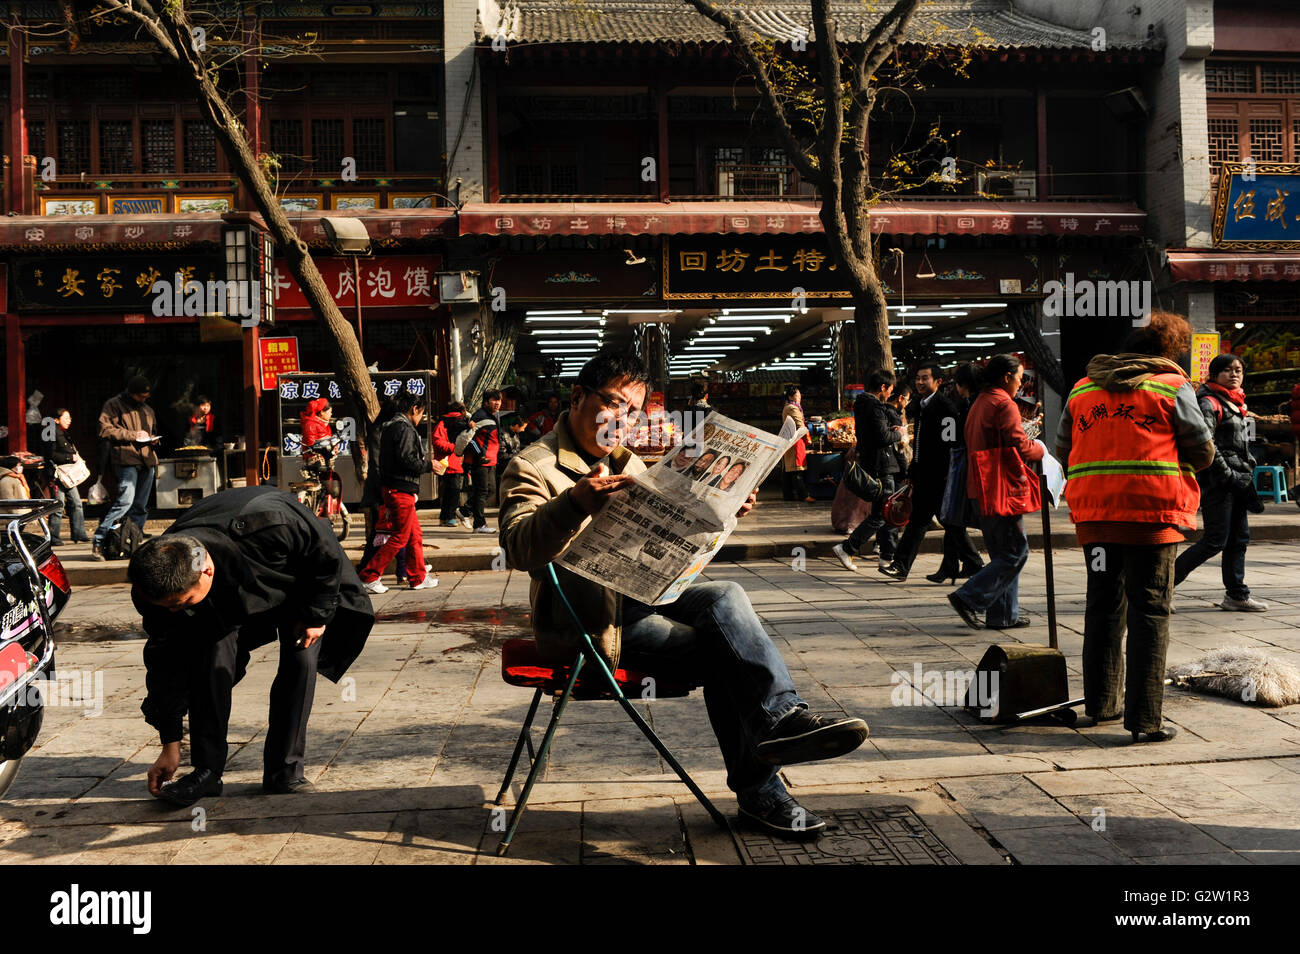 La Chine, Shaanxi Province, ville, rue commerçante et lecteur de journaux Banque D'Images